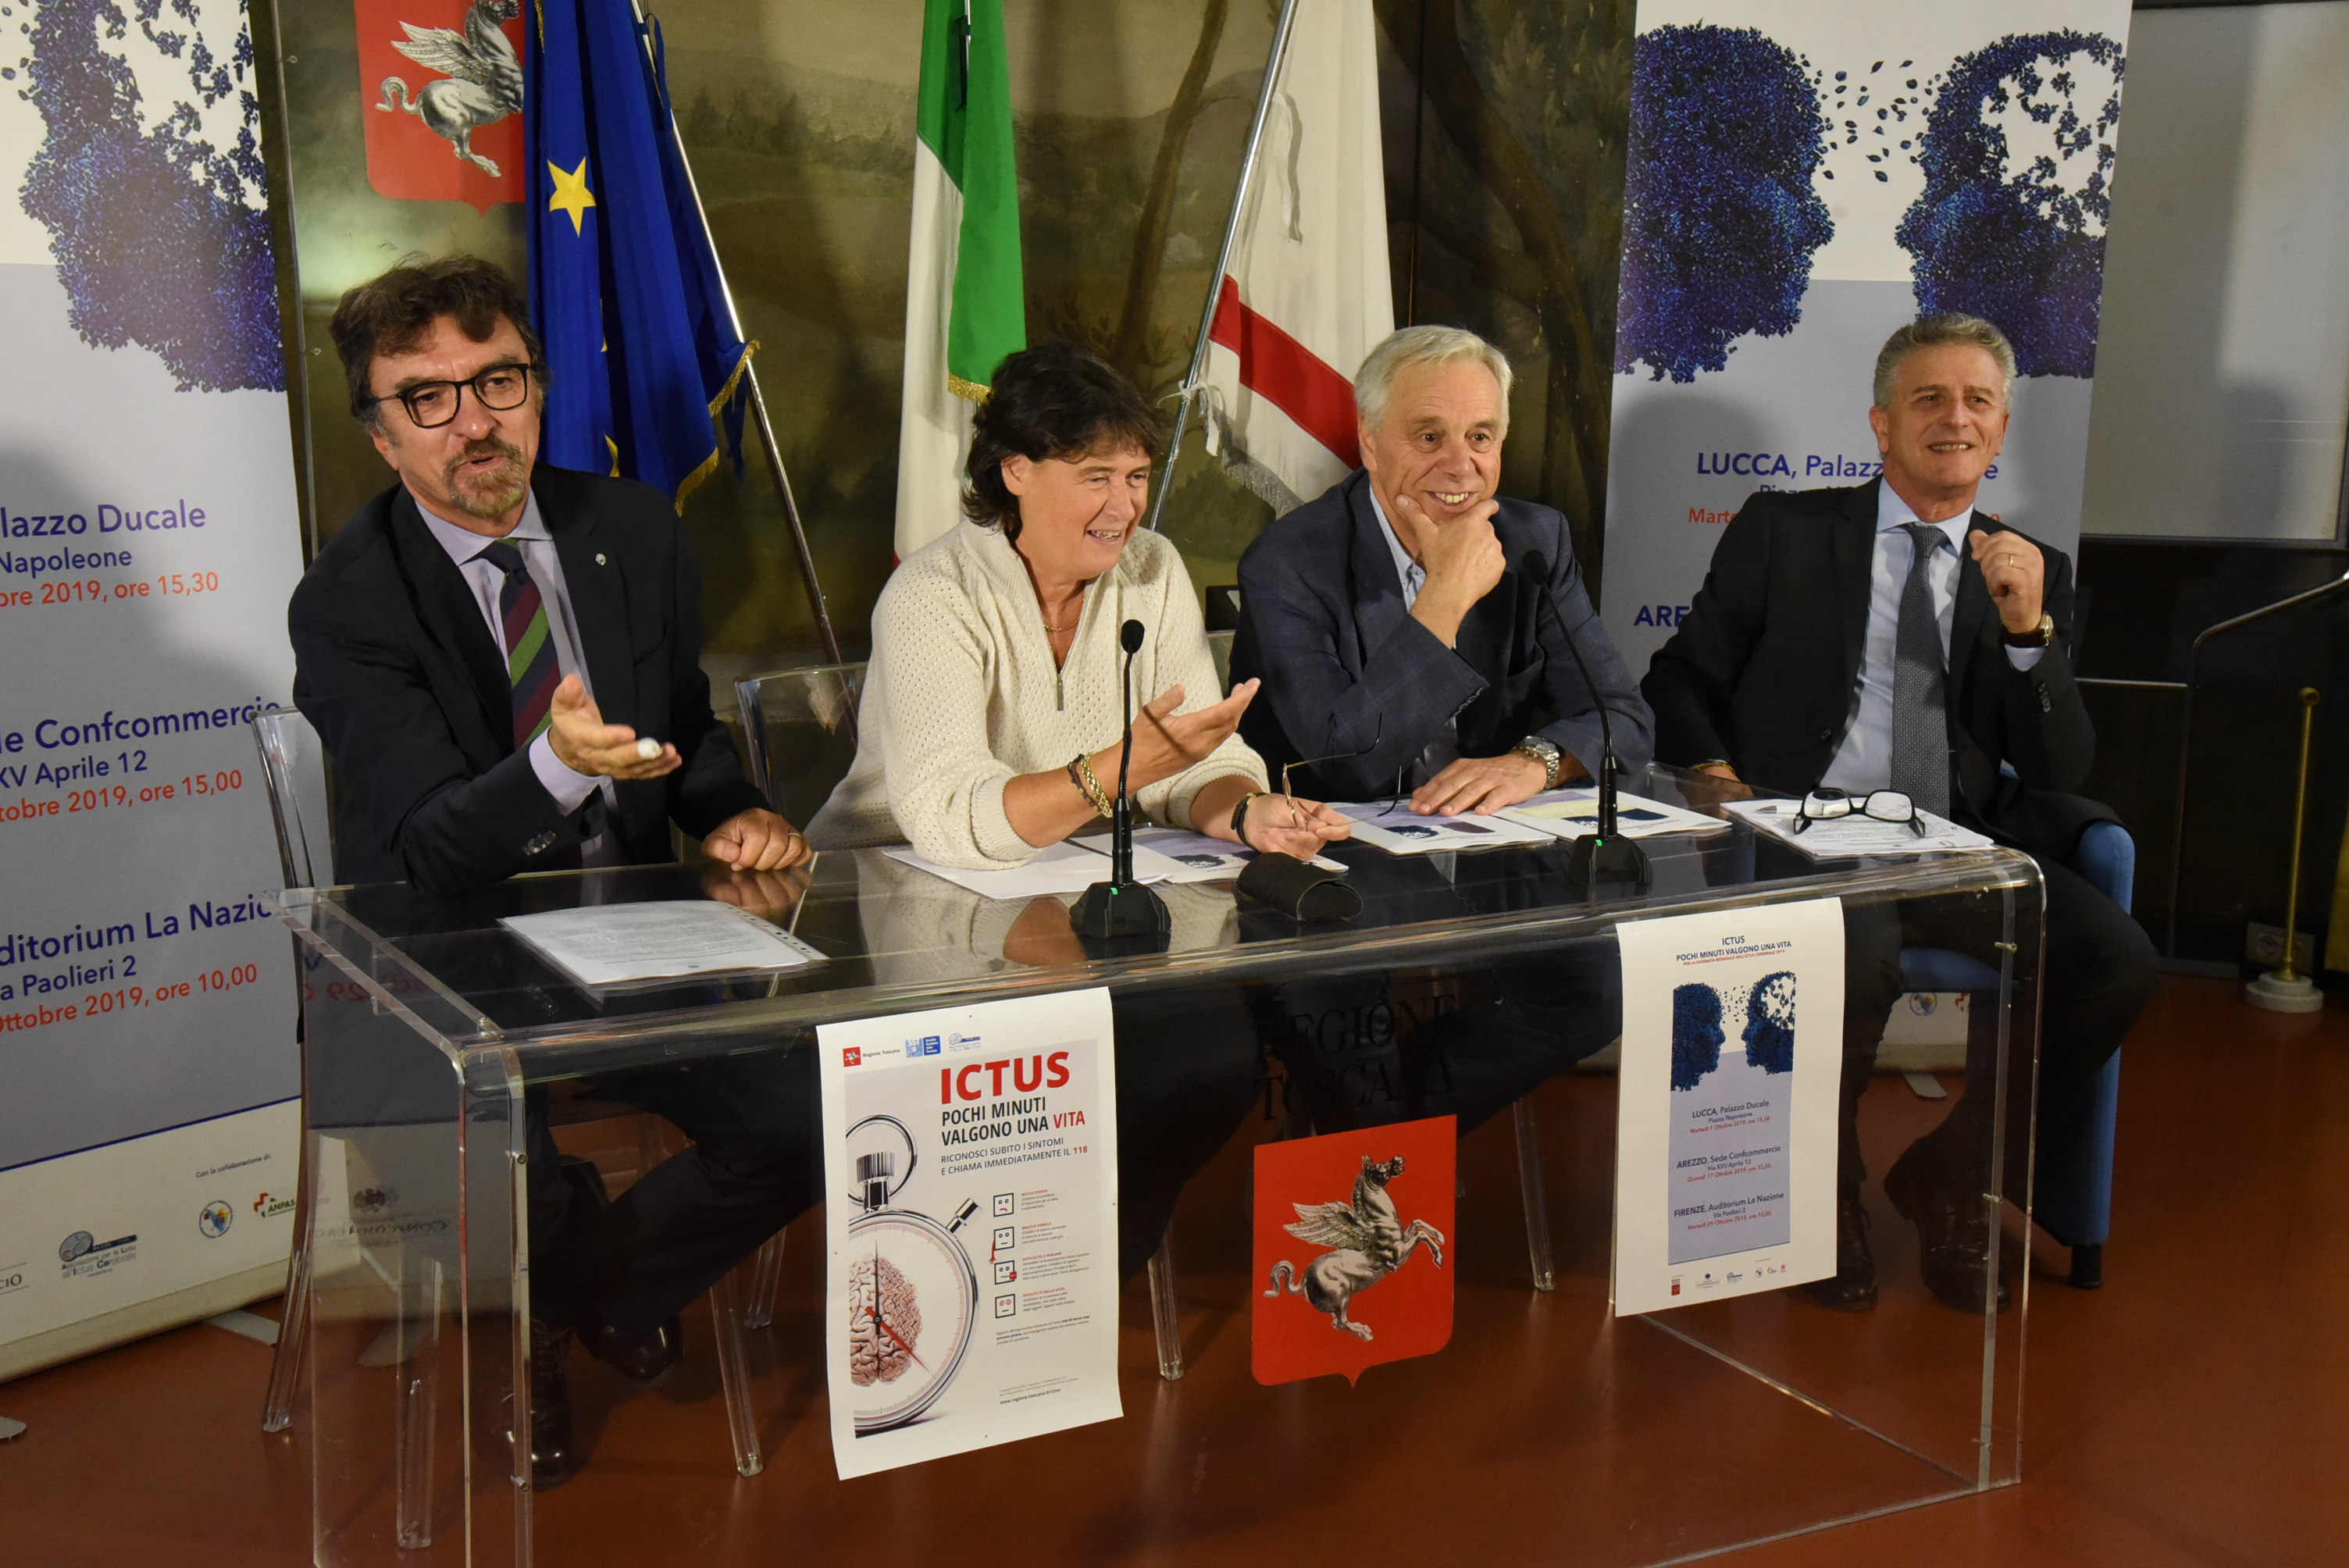 Ictus, in ottobre tre incontri informativi a Lucca, Arezzo e Firenze